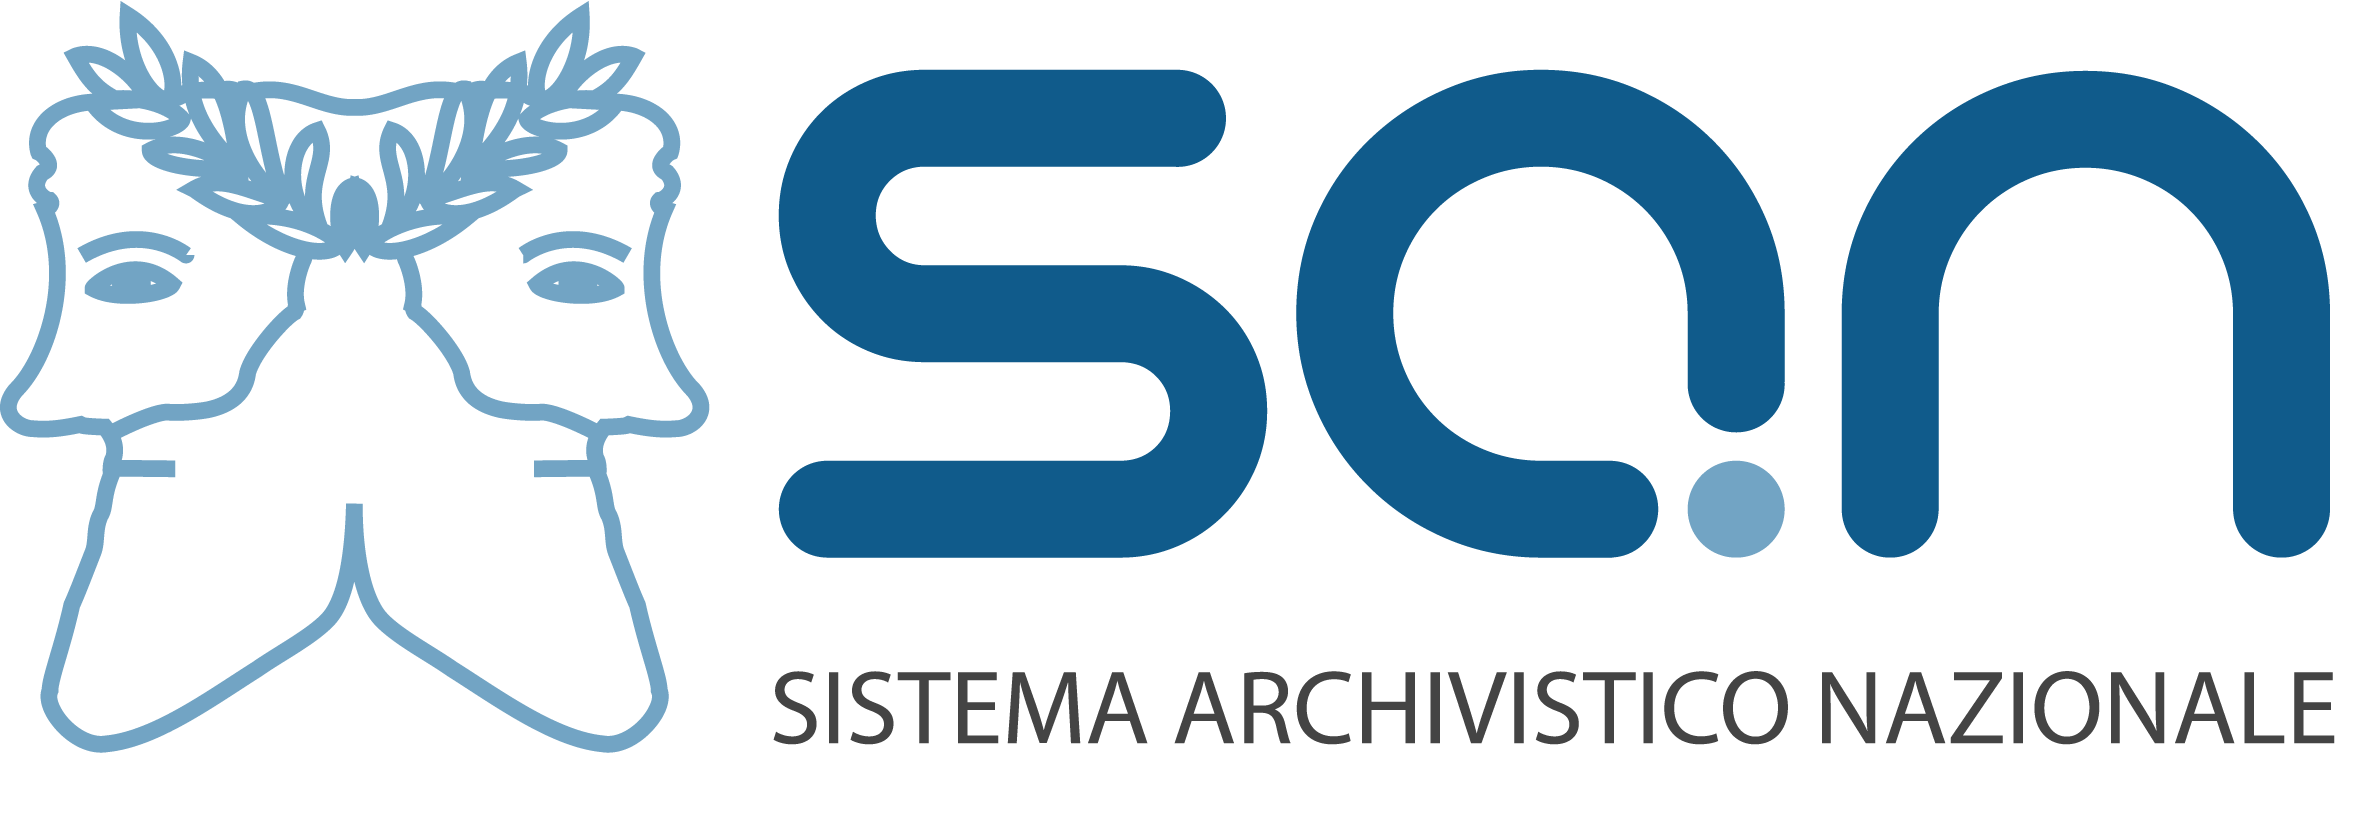 Sistema Archivistico Nazionale